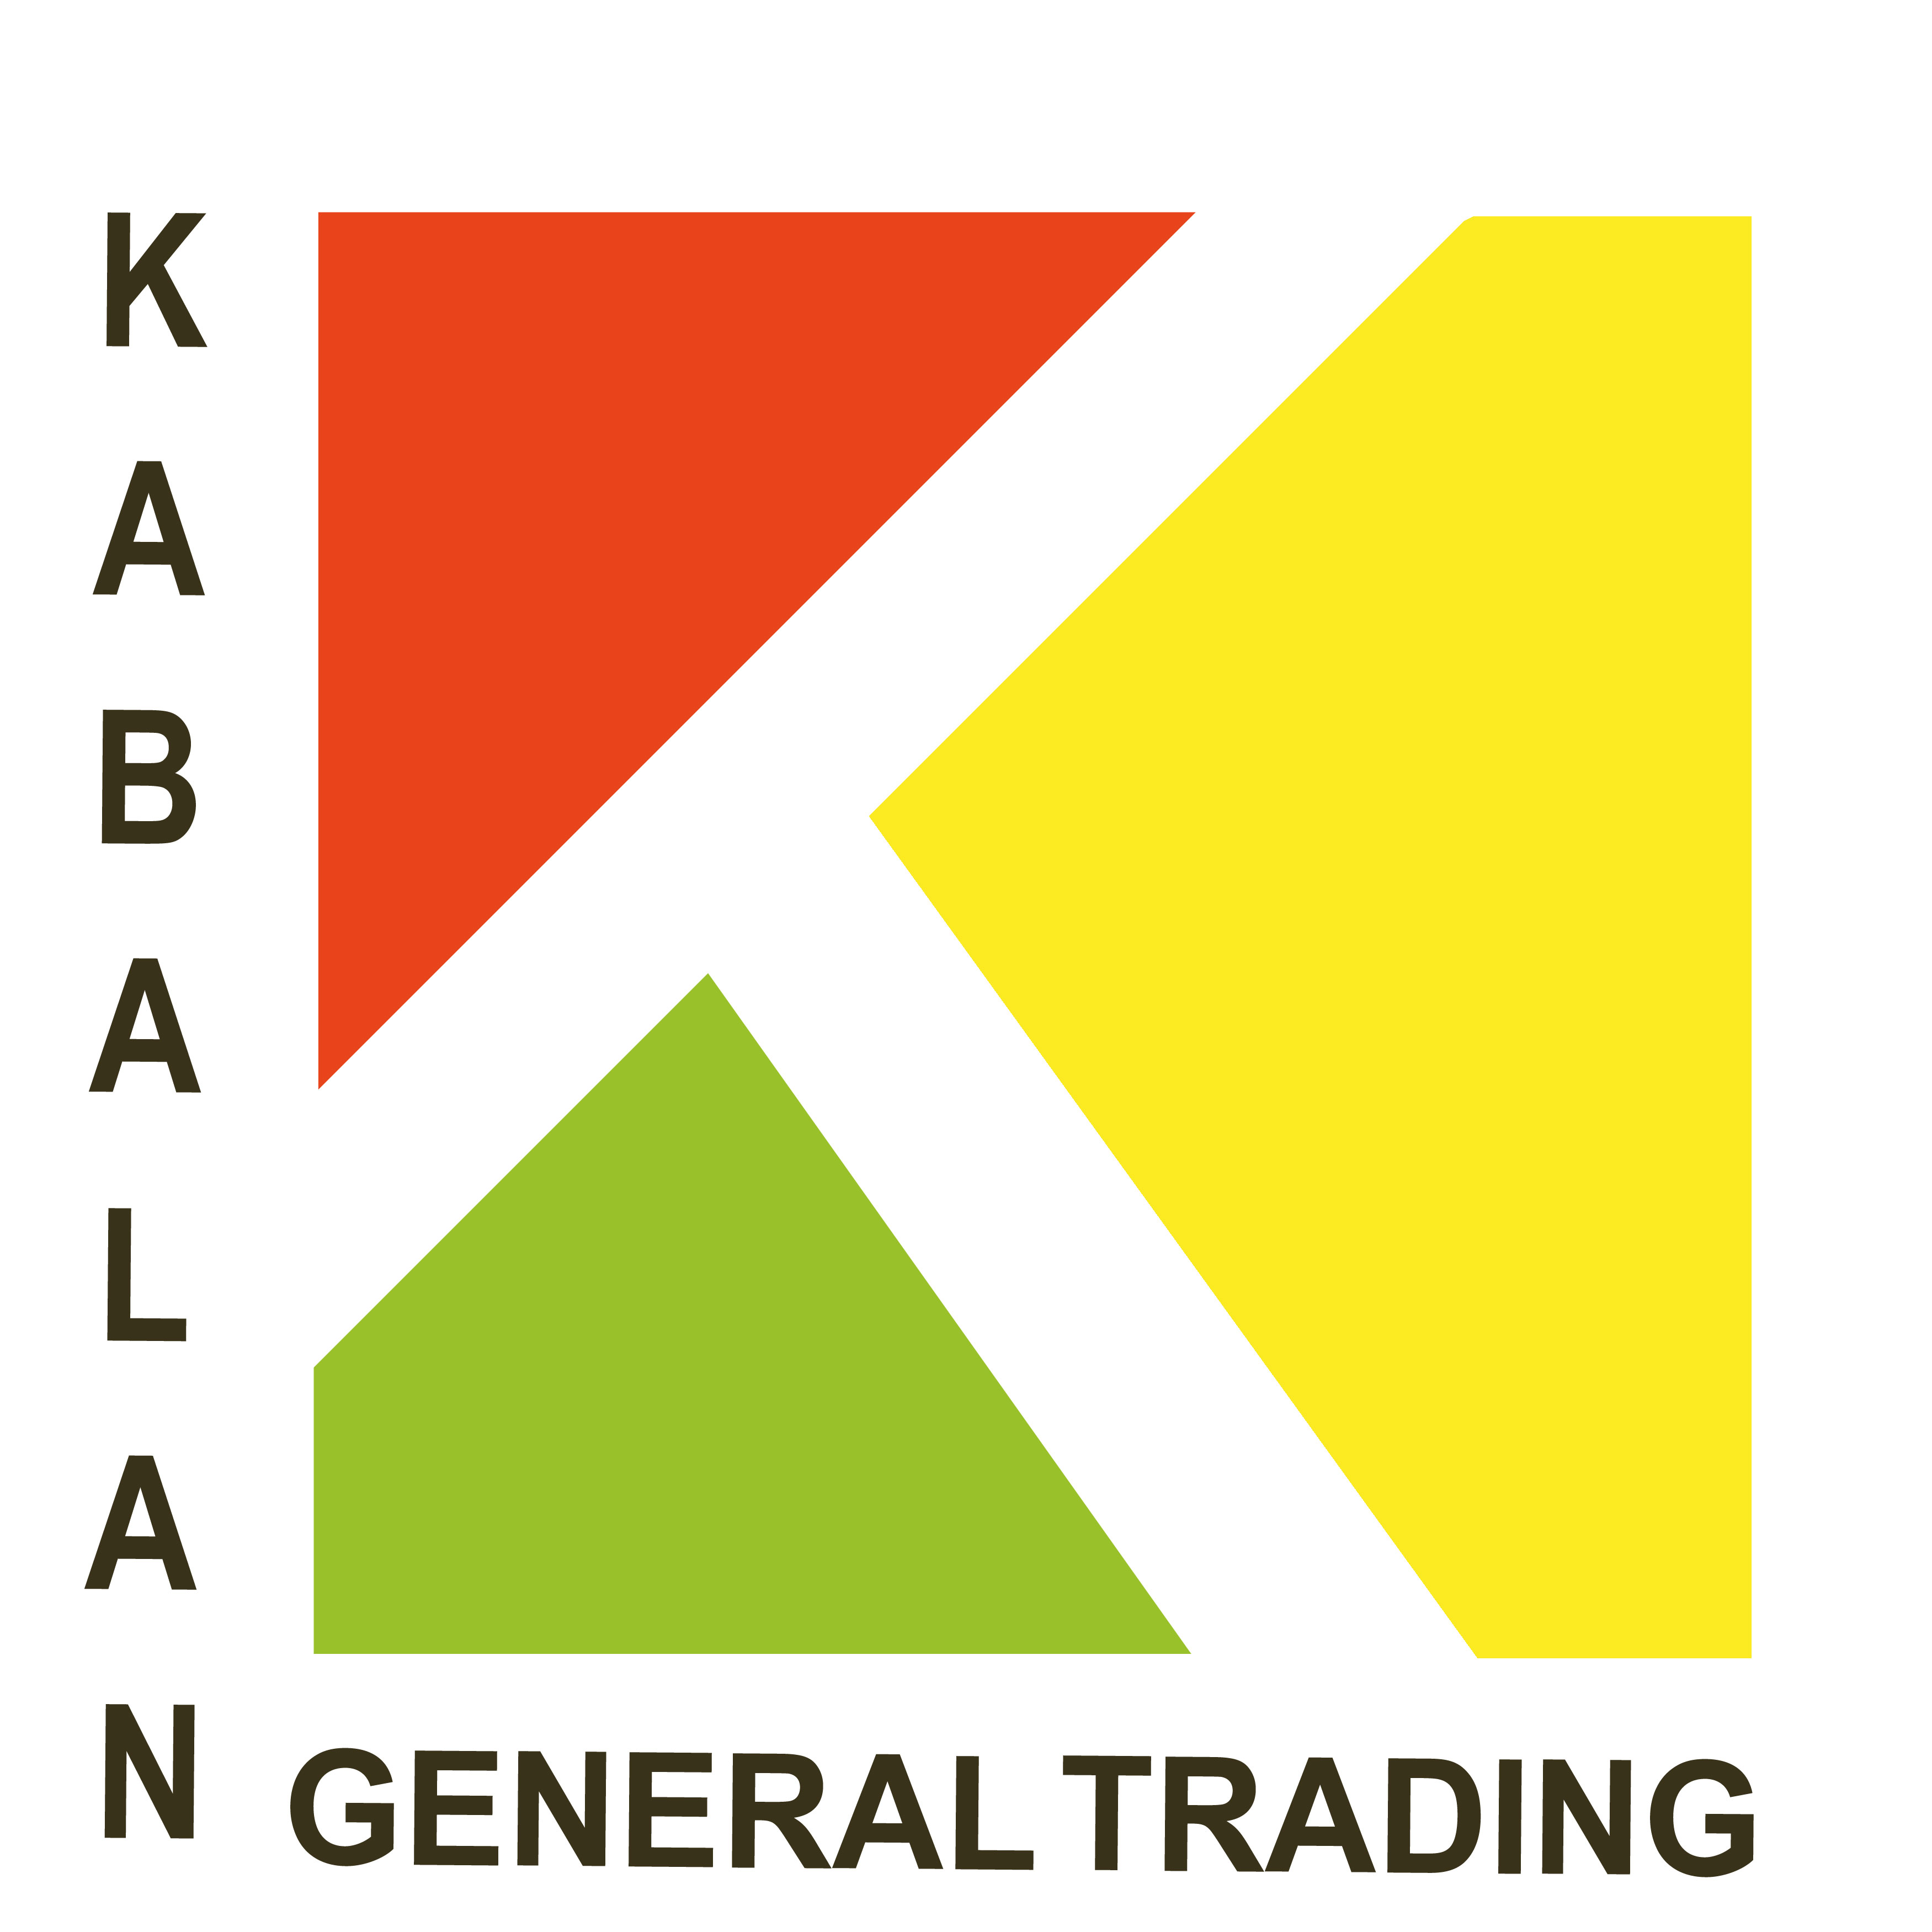 KAB general trading company